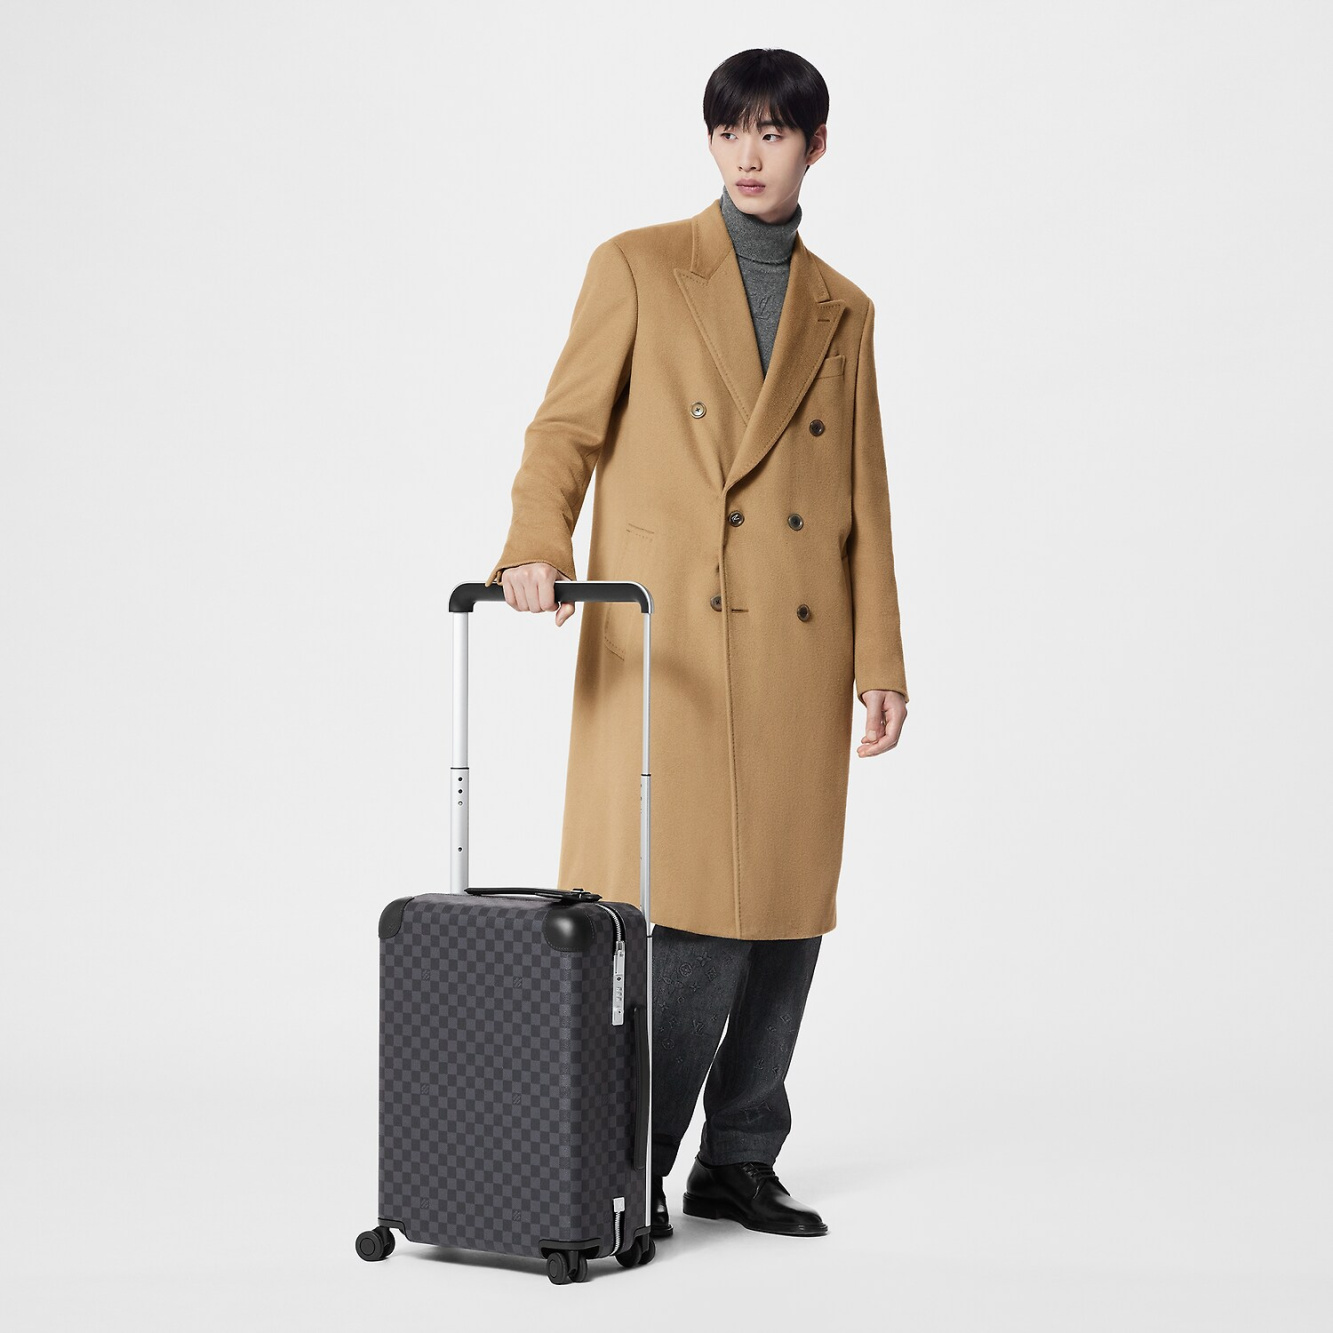 Louis Vuitton Horizon 55 Carry-On Suitcase - Vitkac shop online